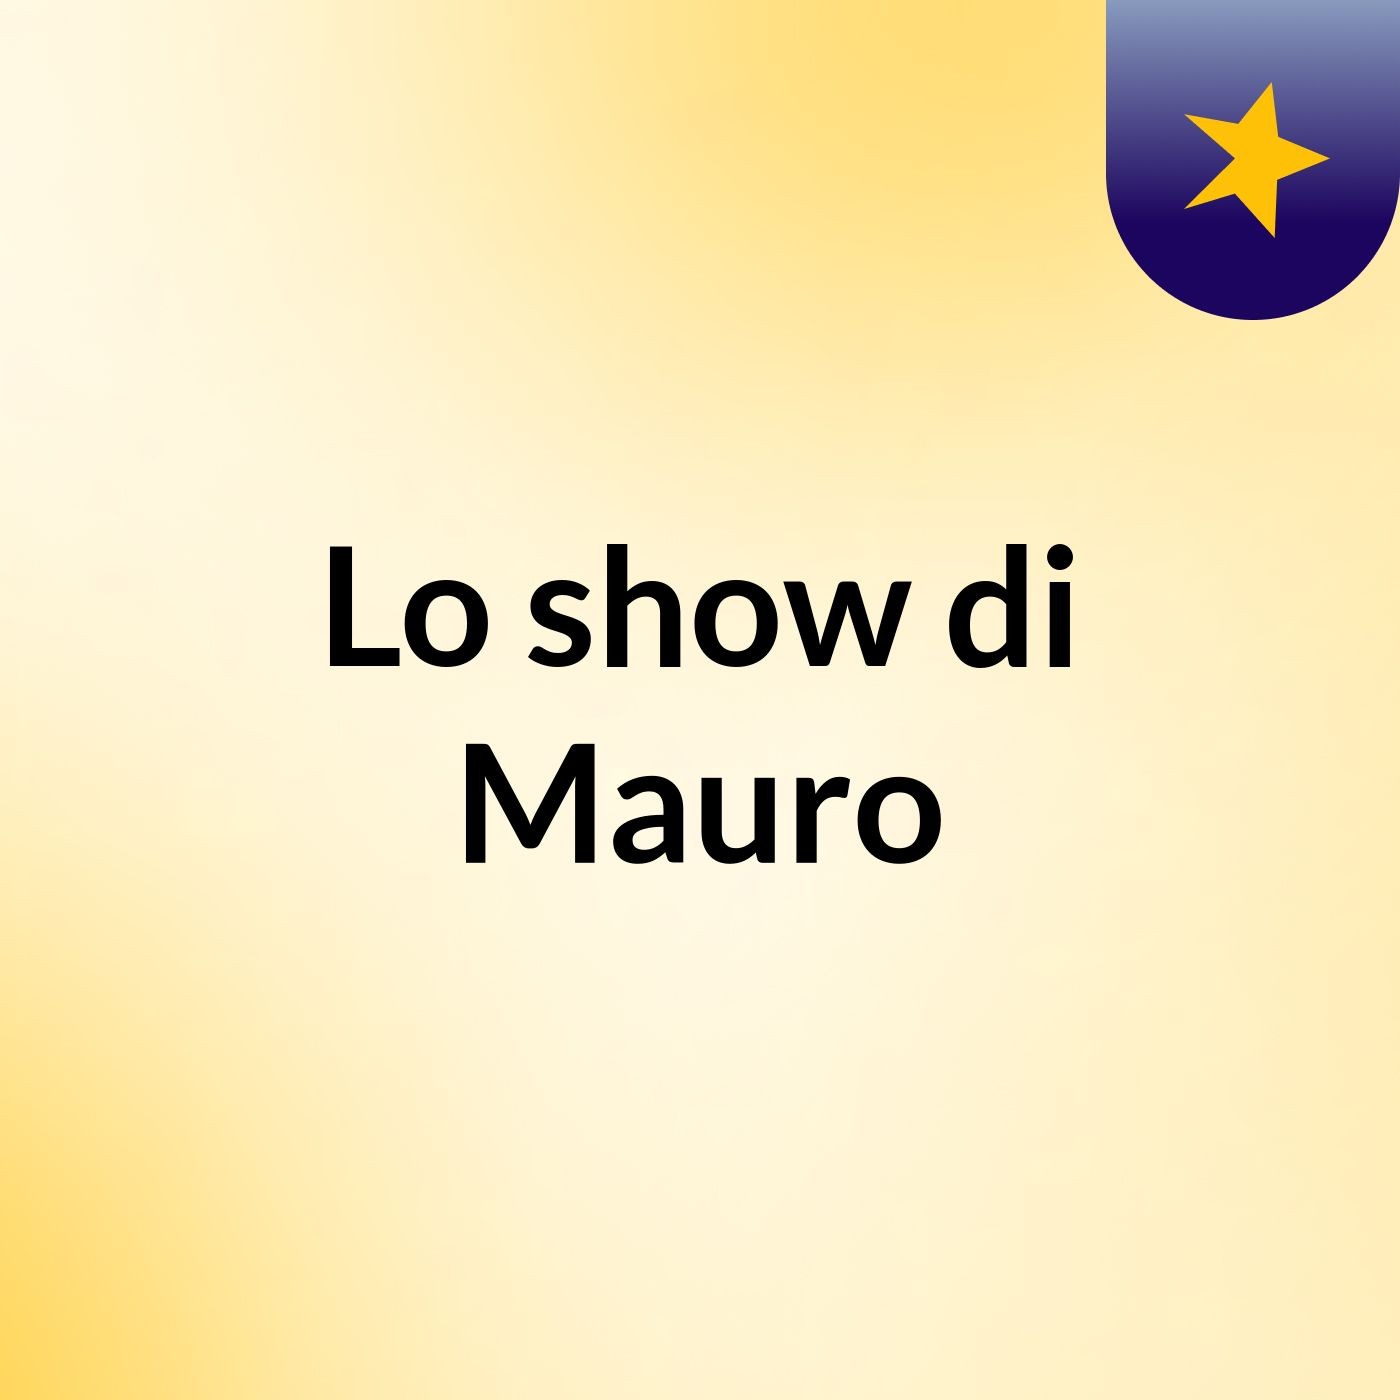 Lo show di Mauro